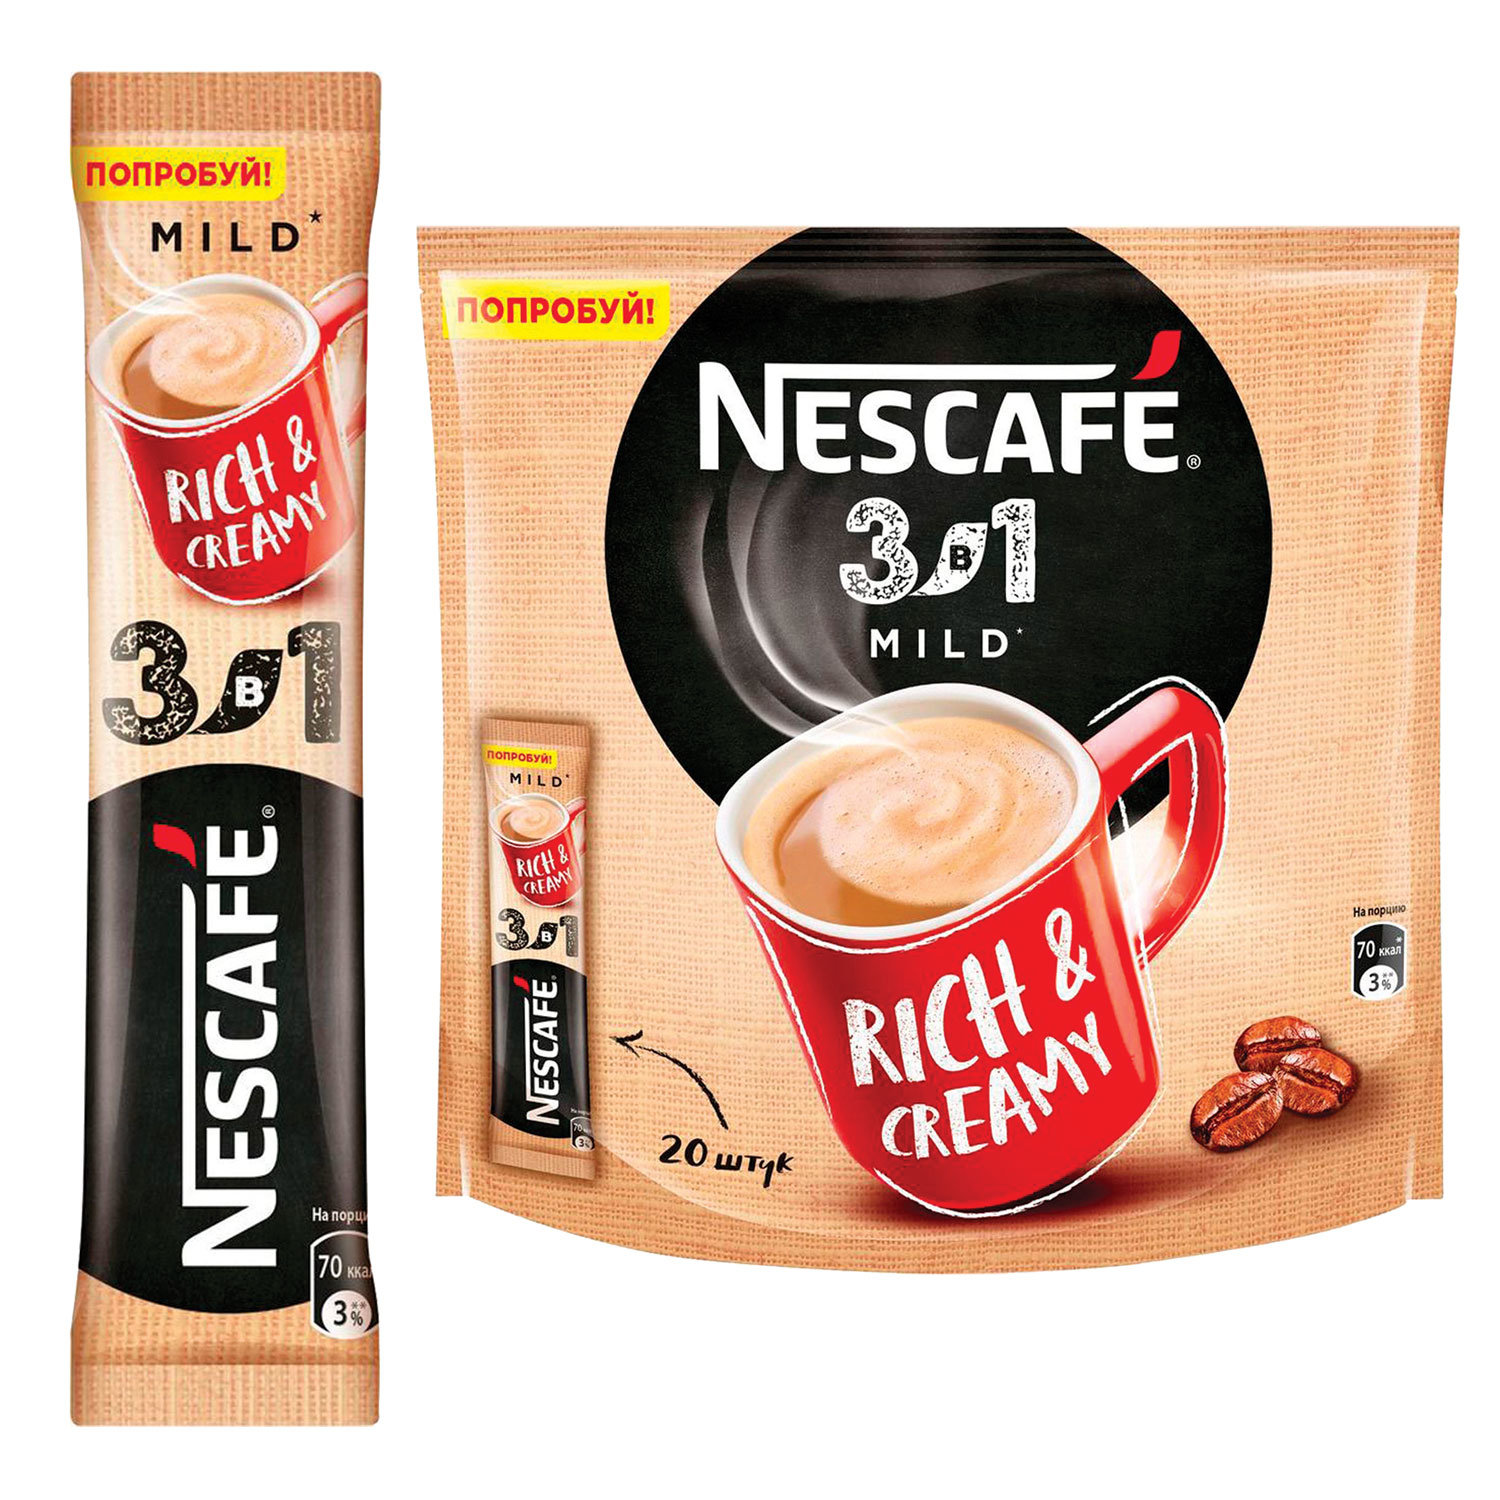 Кофе 3в1 пакетик. Nescafe 3 в 1 mild. Нескафе 3 в 1 20 пакетиков. Растворимый кофе в пакетиках Нескафе 3 в 1. Кофе Нескафе в пакетиках 3 в 1.